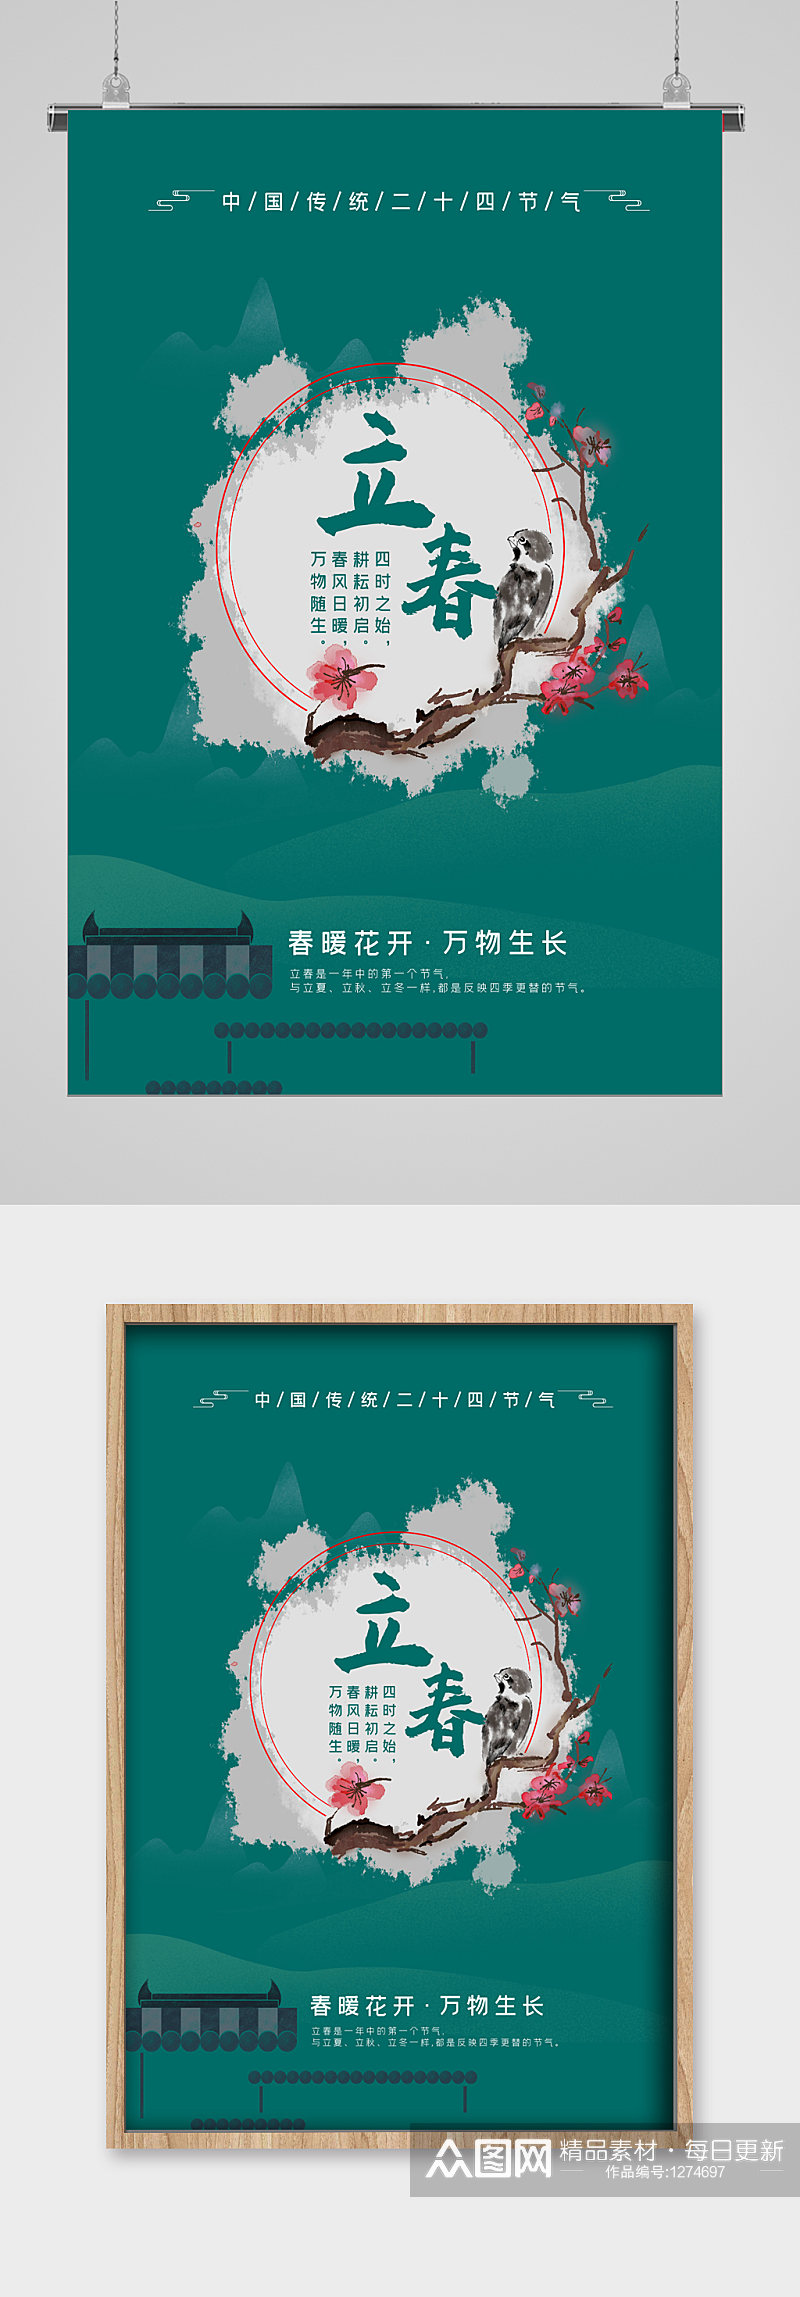 立春节气绿色背景宣传海报素材